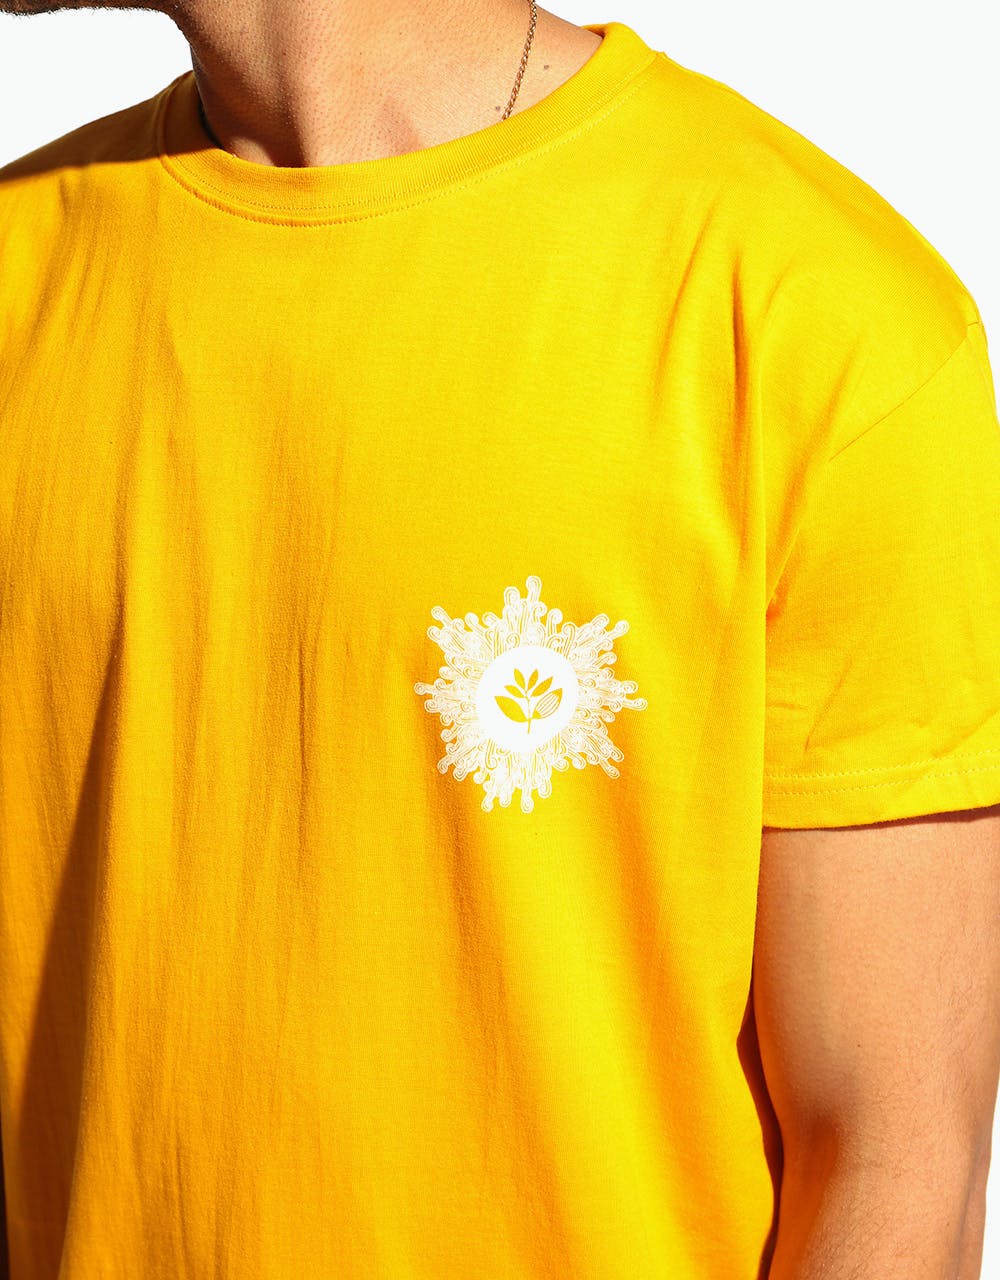 Magenta Swirl T-Shirt - Yellow